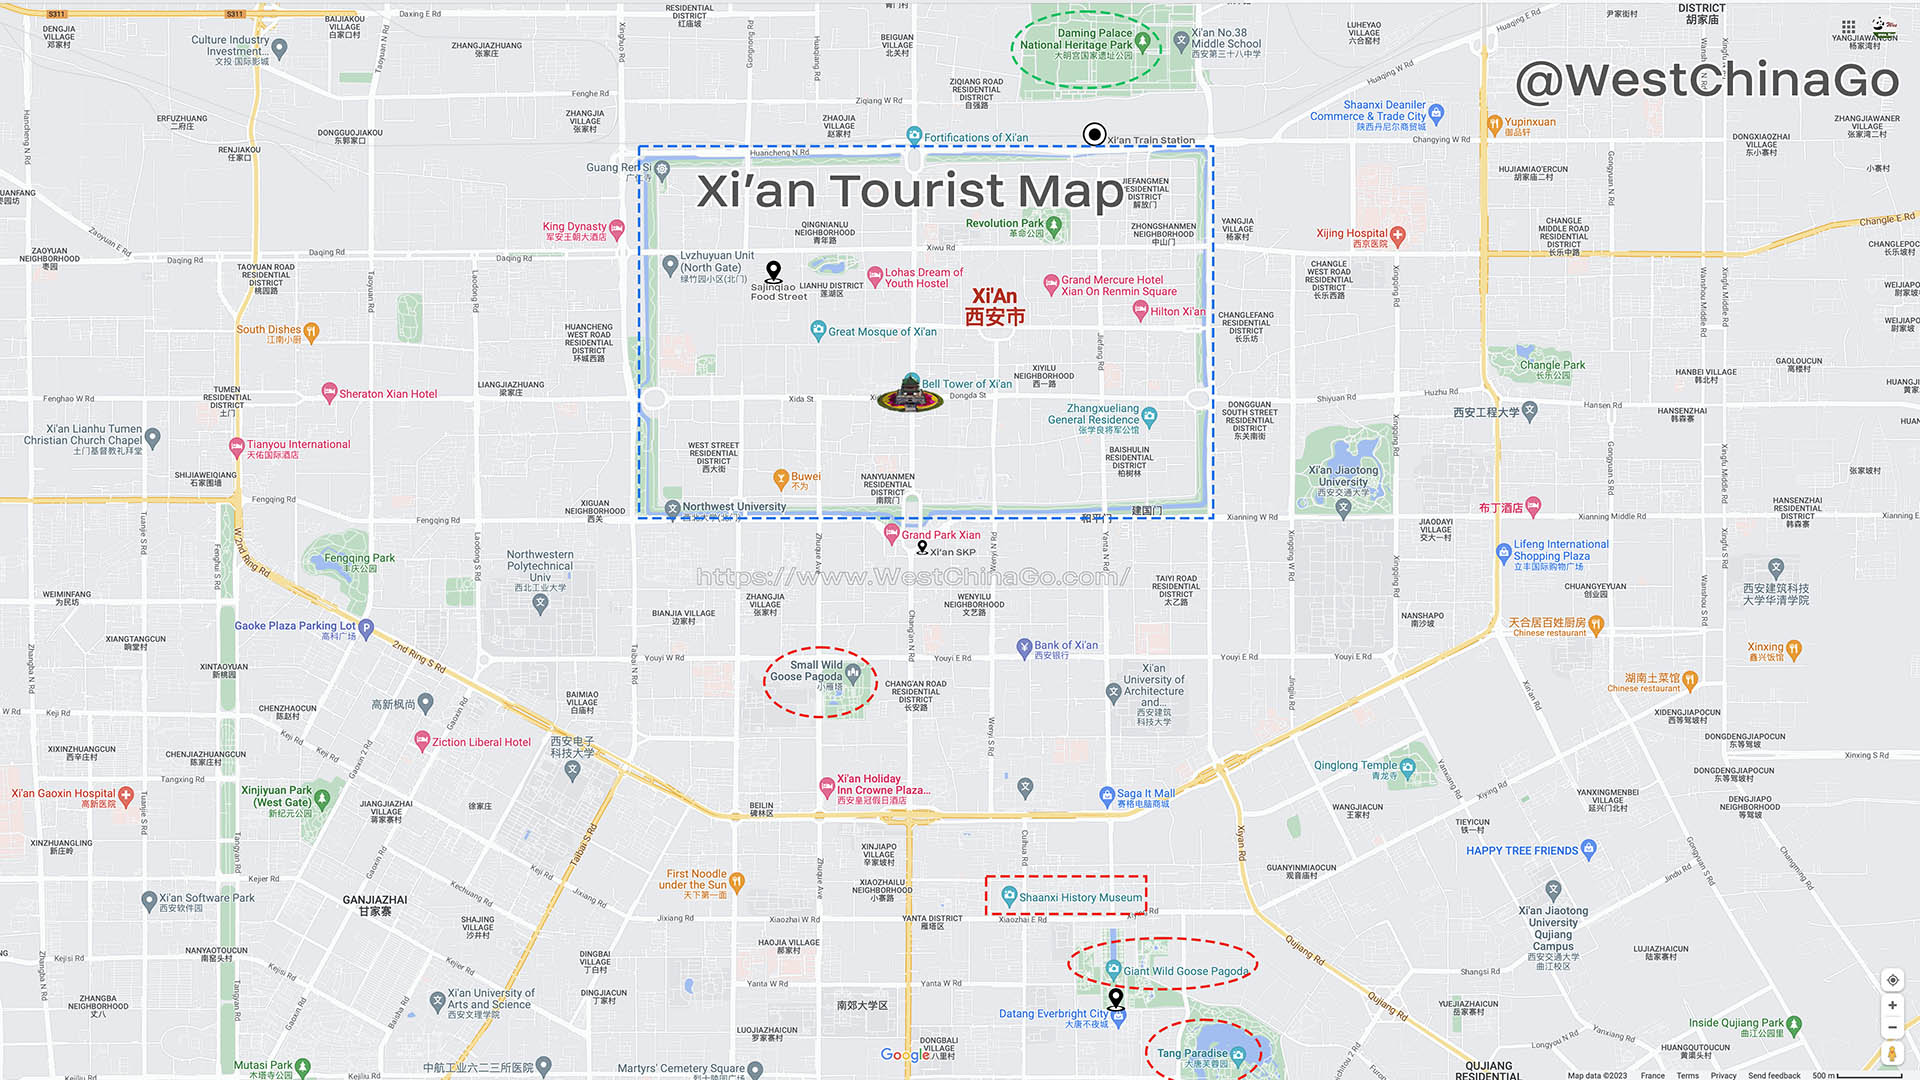 Xi'an tourist map